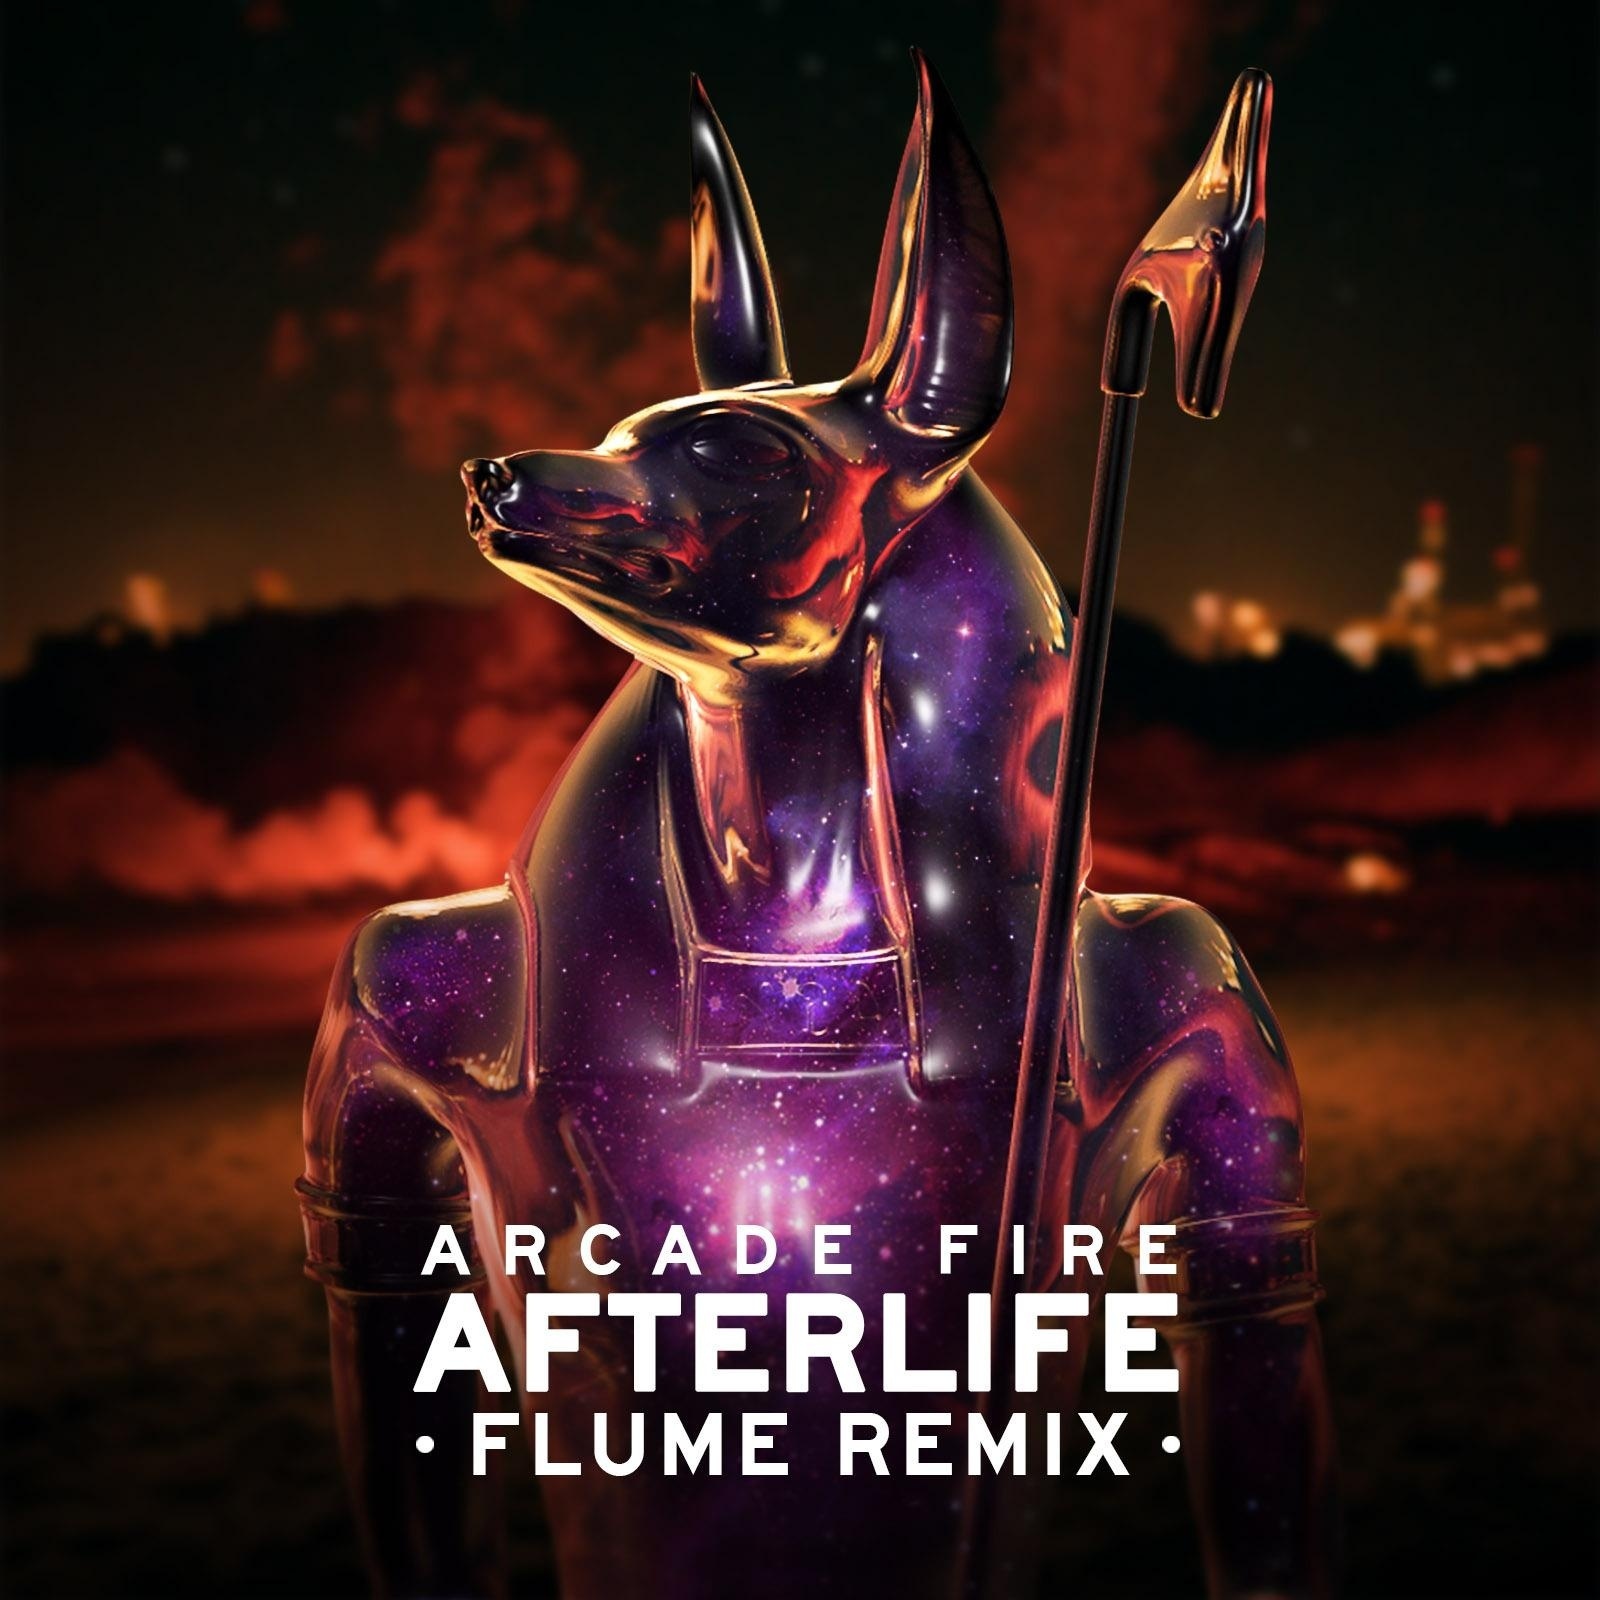 Afterlife (Flume Remix)